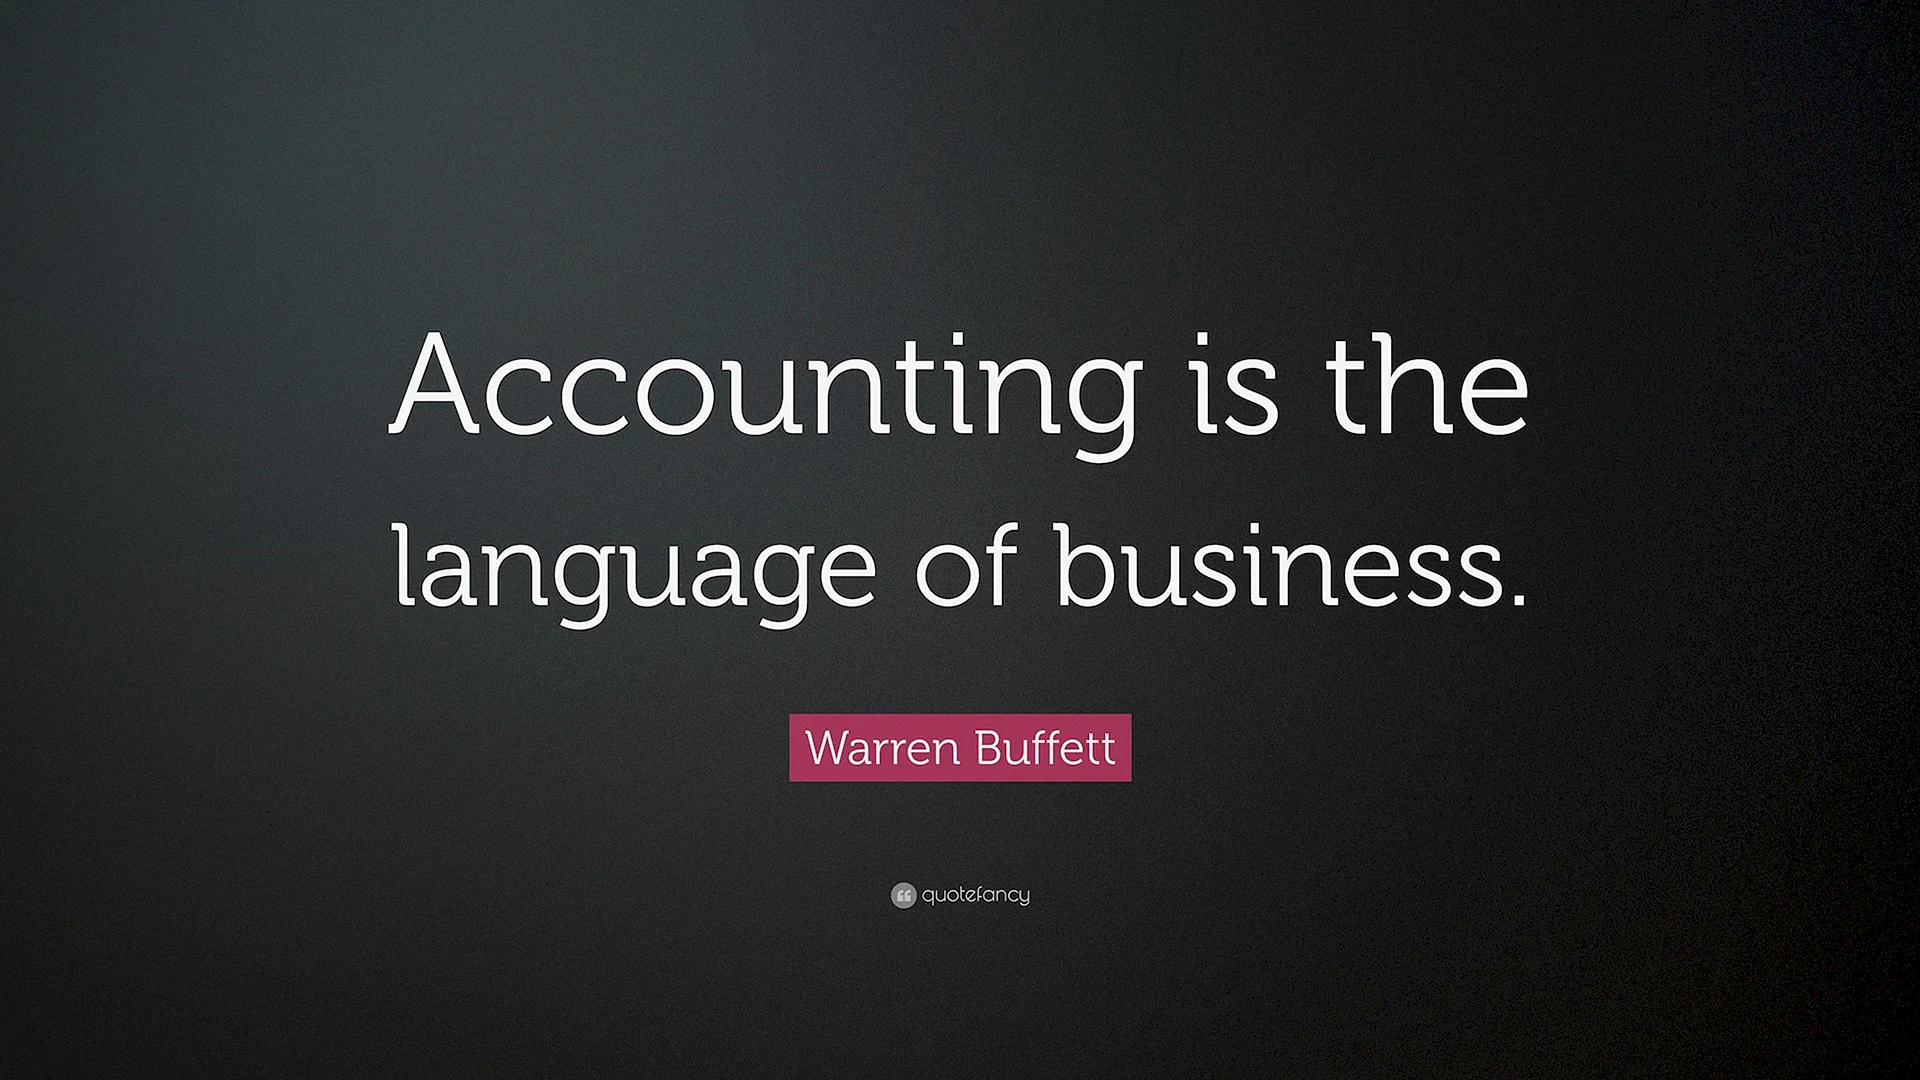 Warren Buffett Accounting Wallpaper